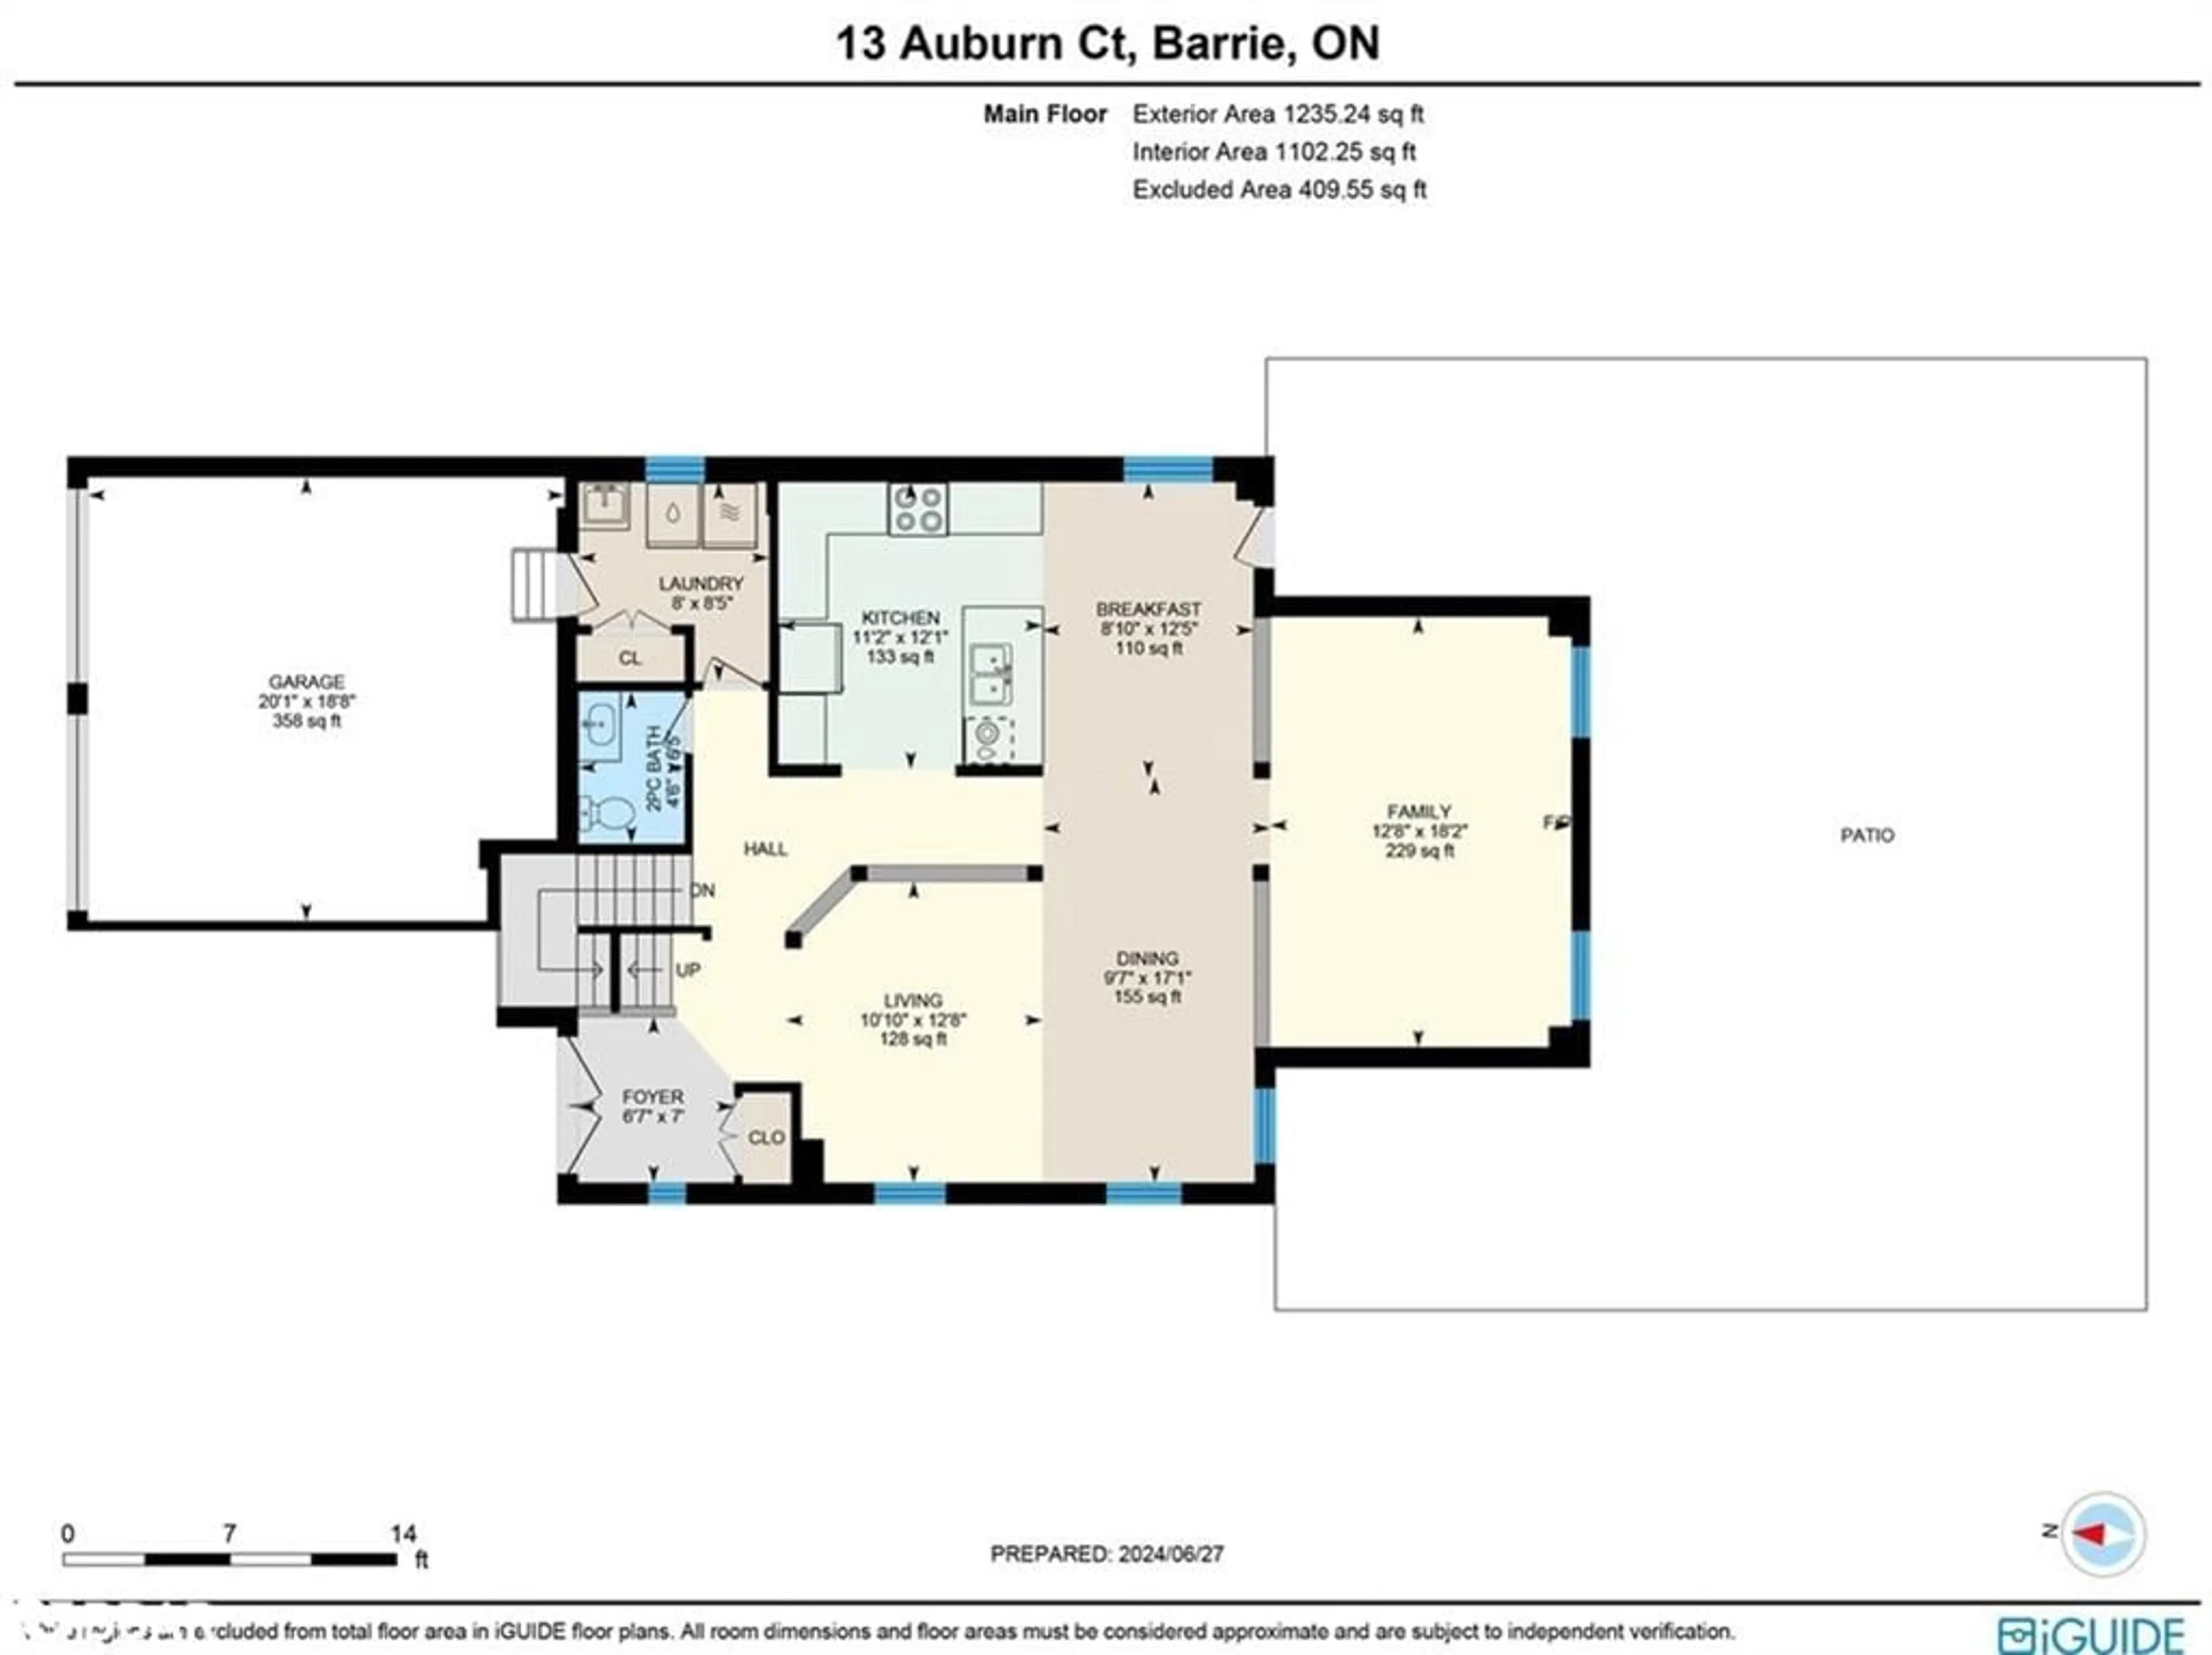 Floor plan for 13 Auburn Crt, Barrie Ontario L4N 6G9